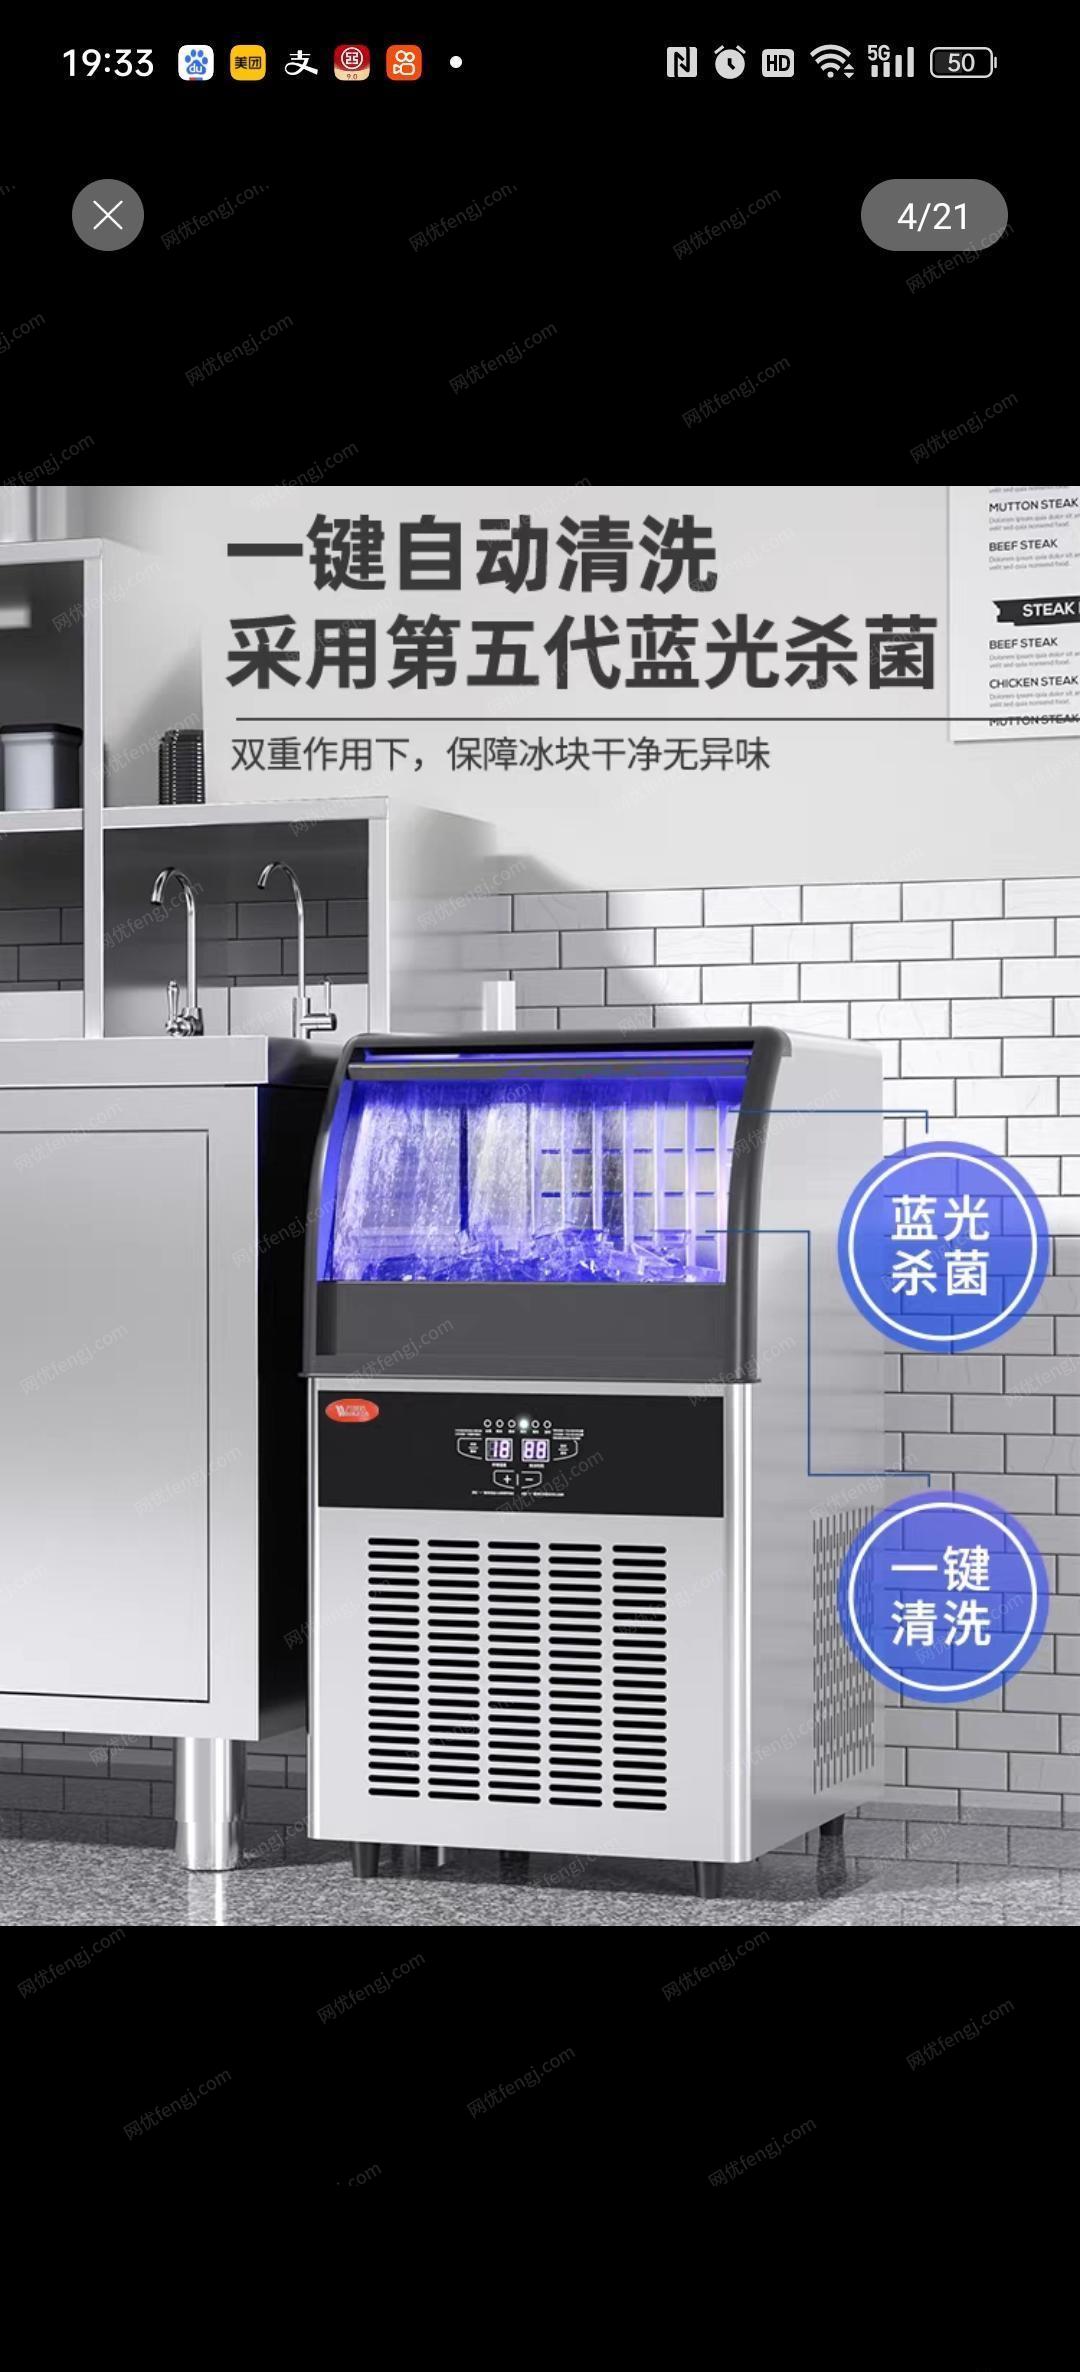 陕西渭南出售万客达月牙风冷制冰机,水冷制冰机